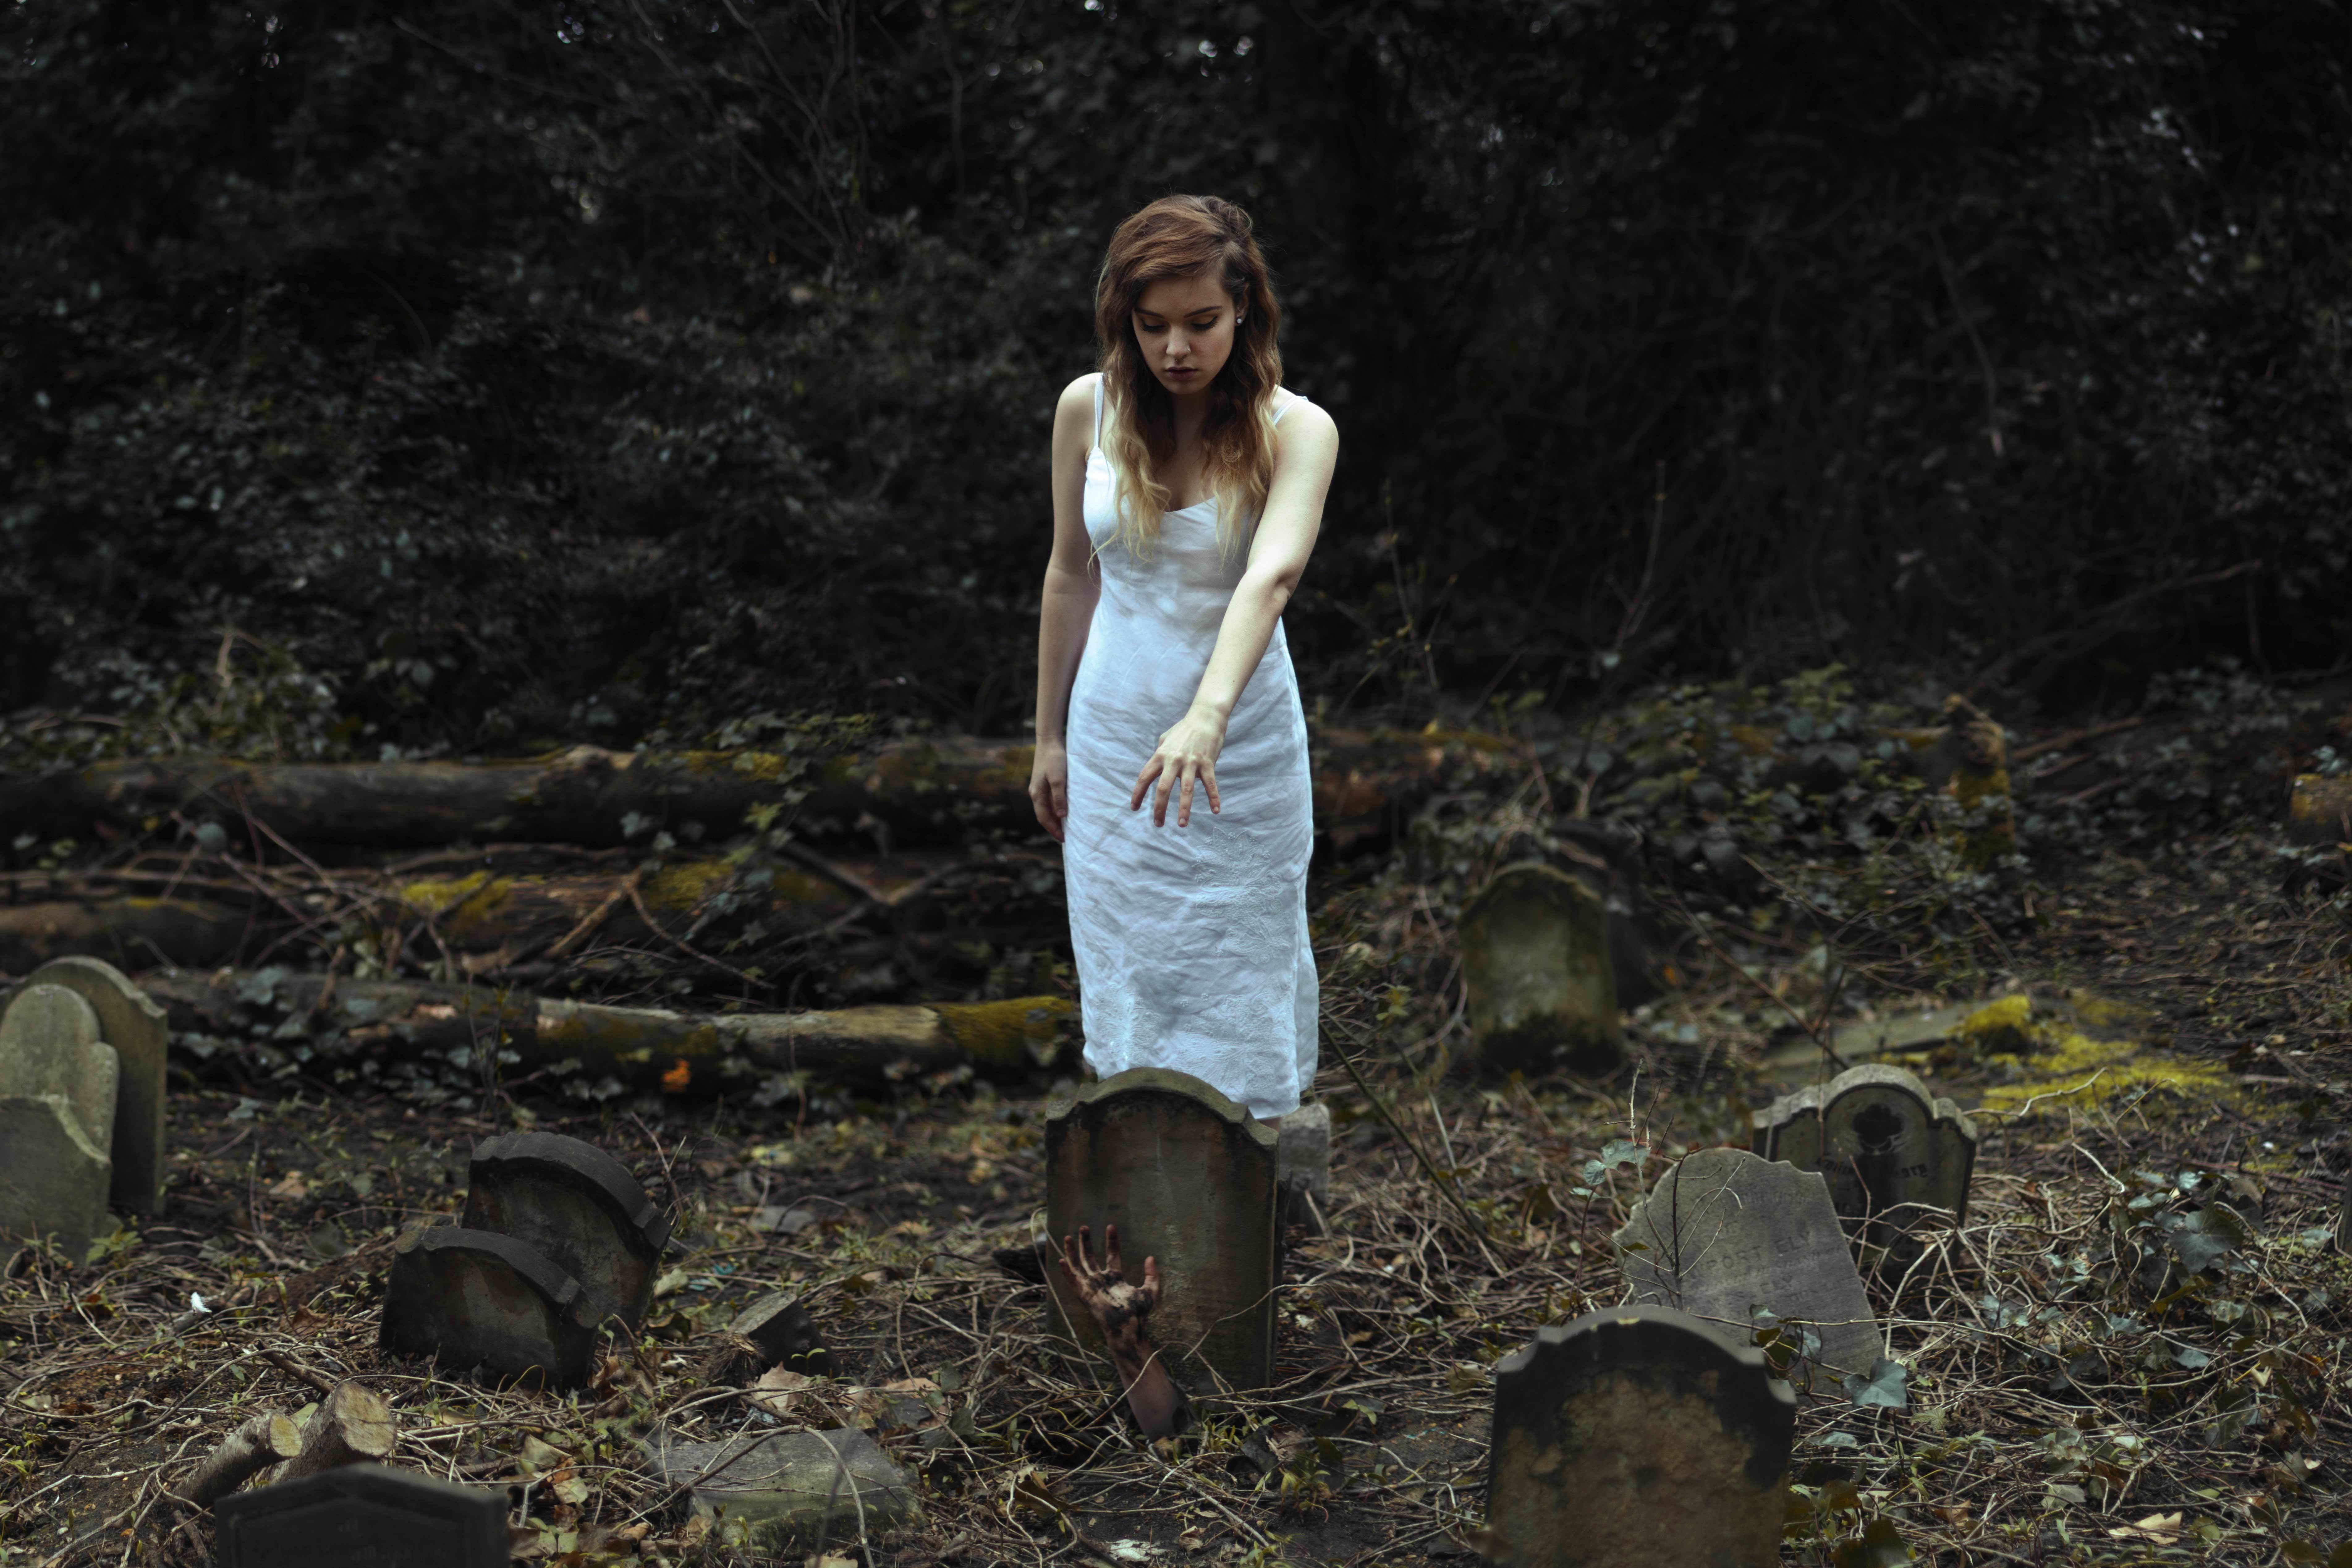 People 7611x5074 women graveyards Graves hands model women outdoors outdoors tombstones horror spooky